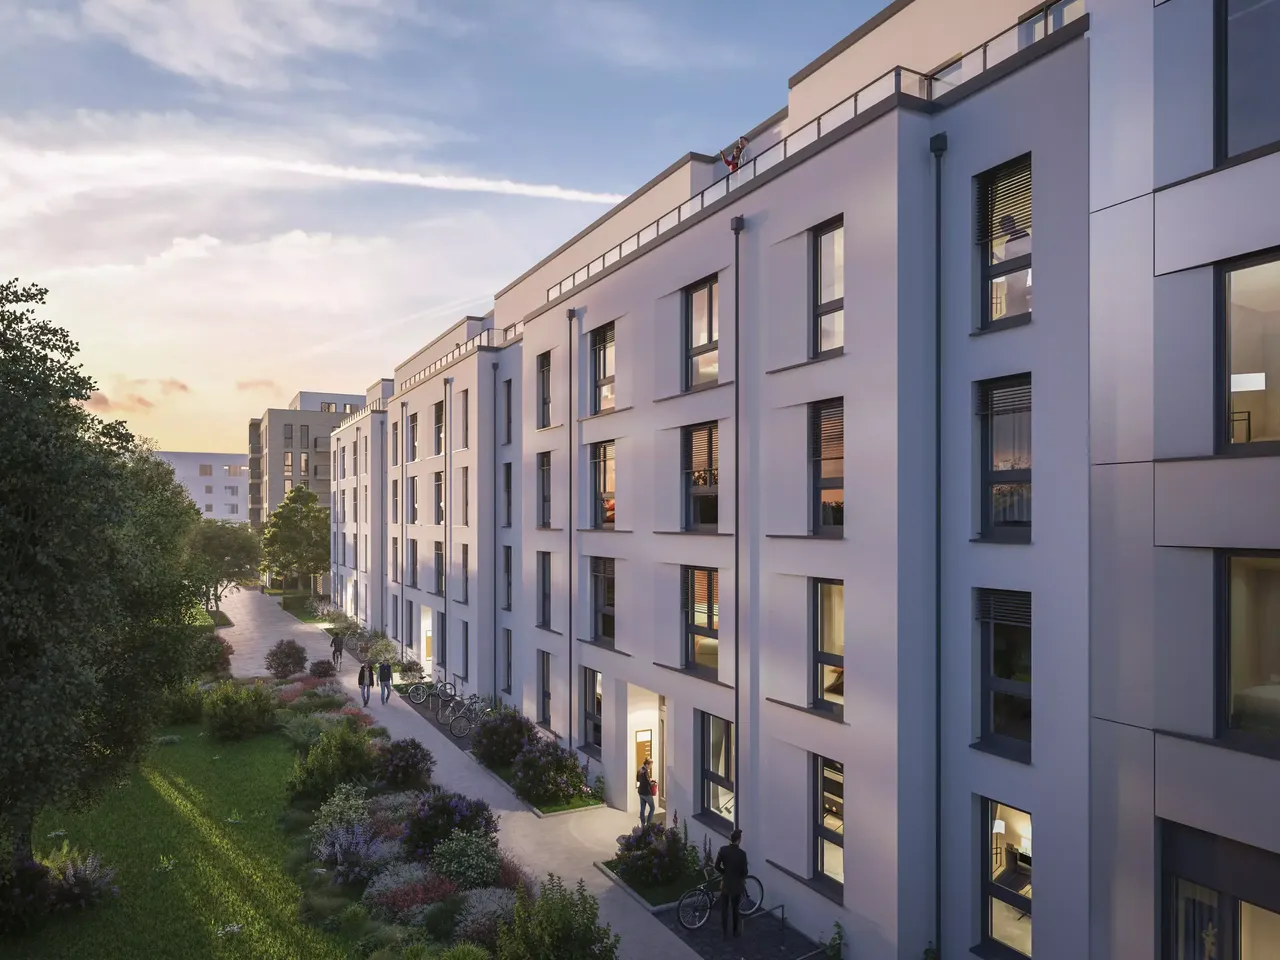 Außenansicht: Es wird die Fassade der hausInvest Immobilie Seetor Living in Nürnberg abgebildet